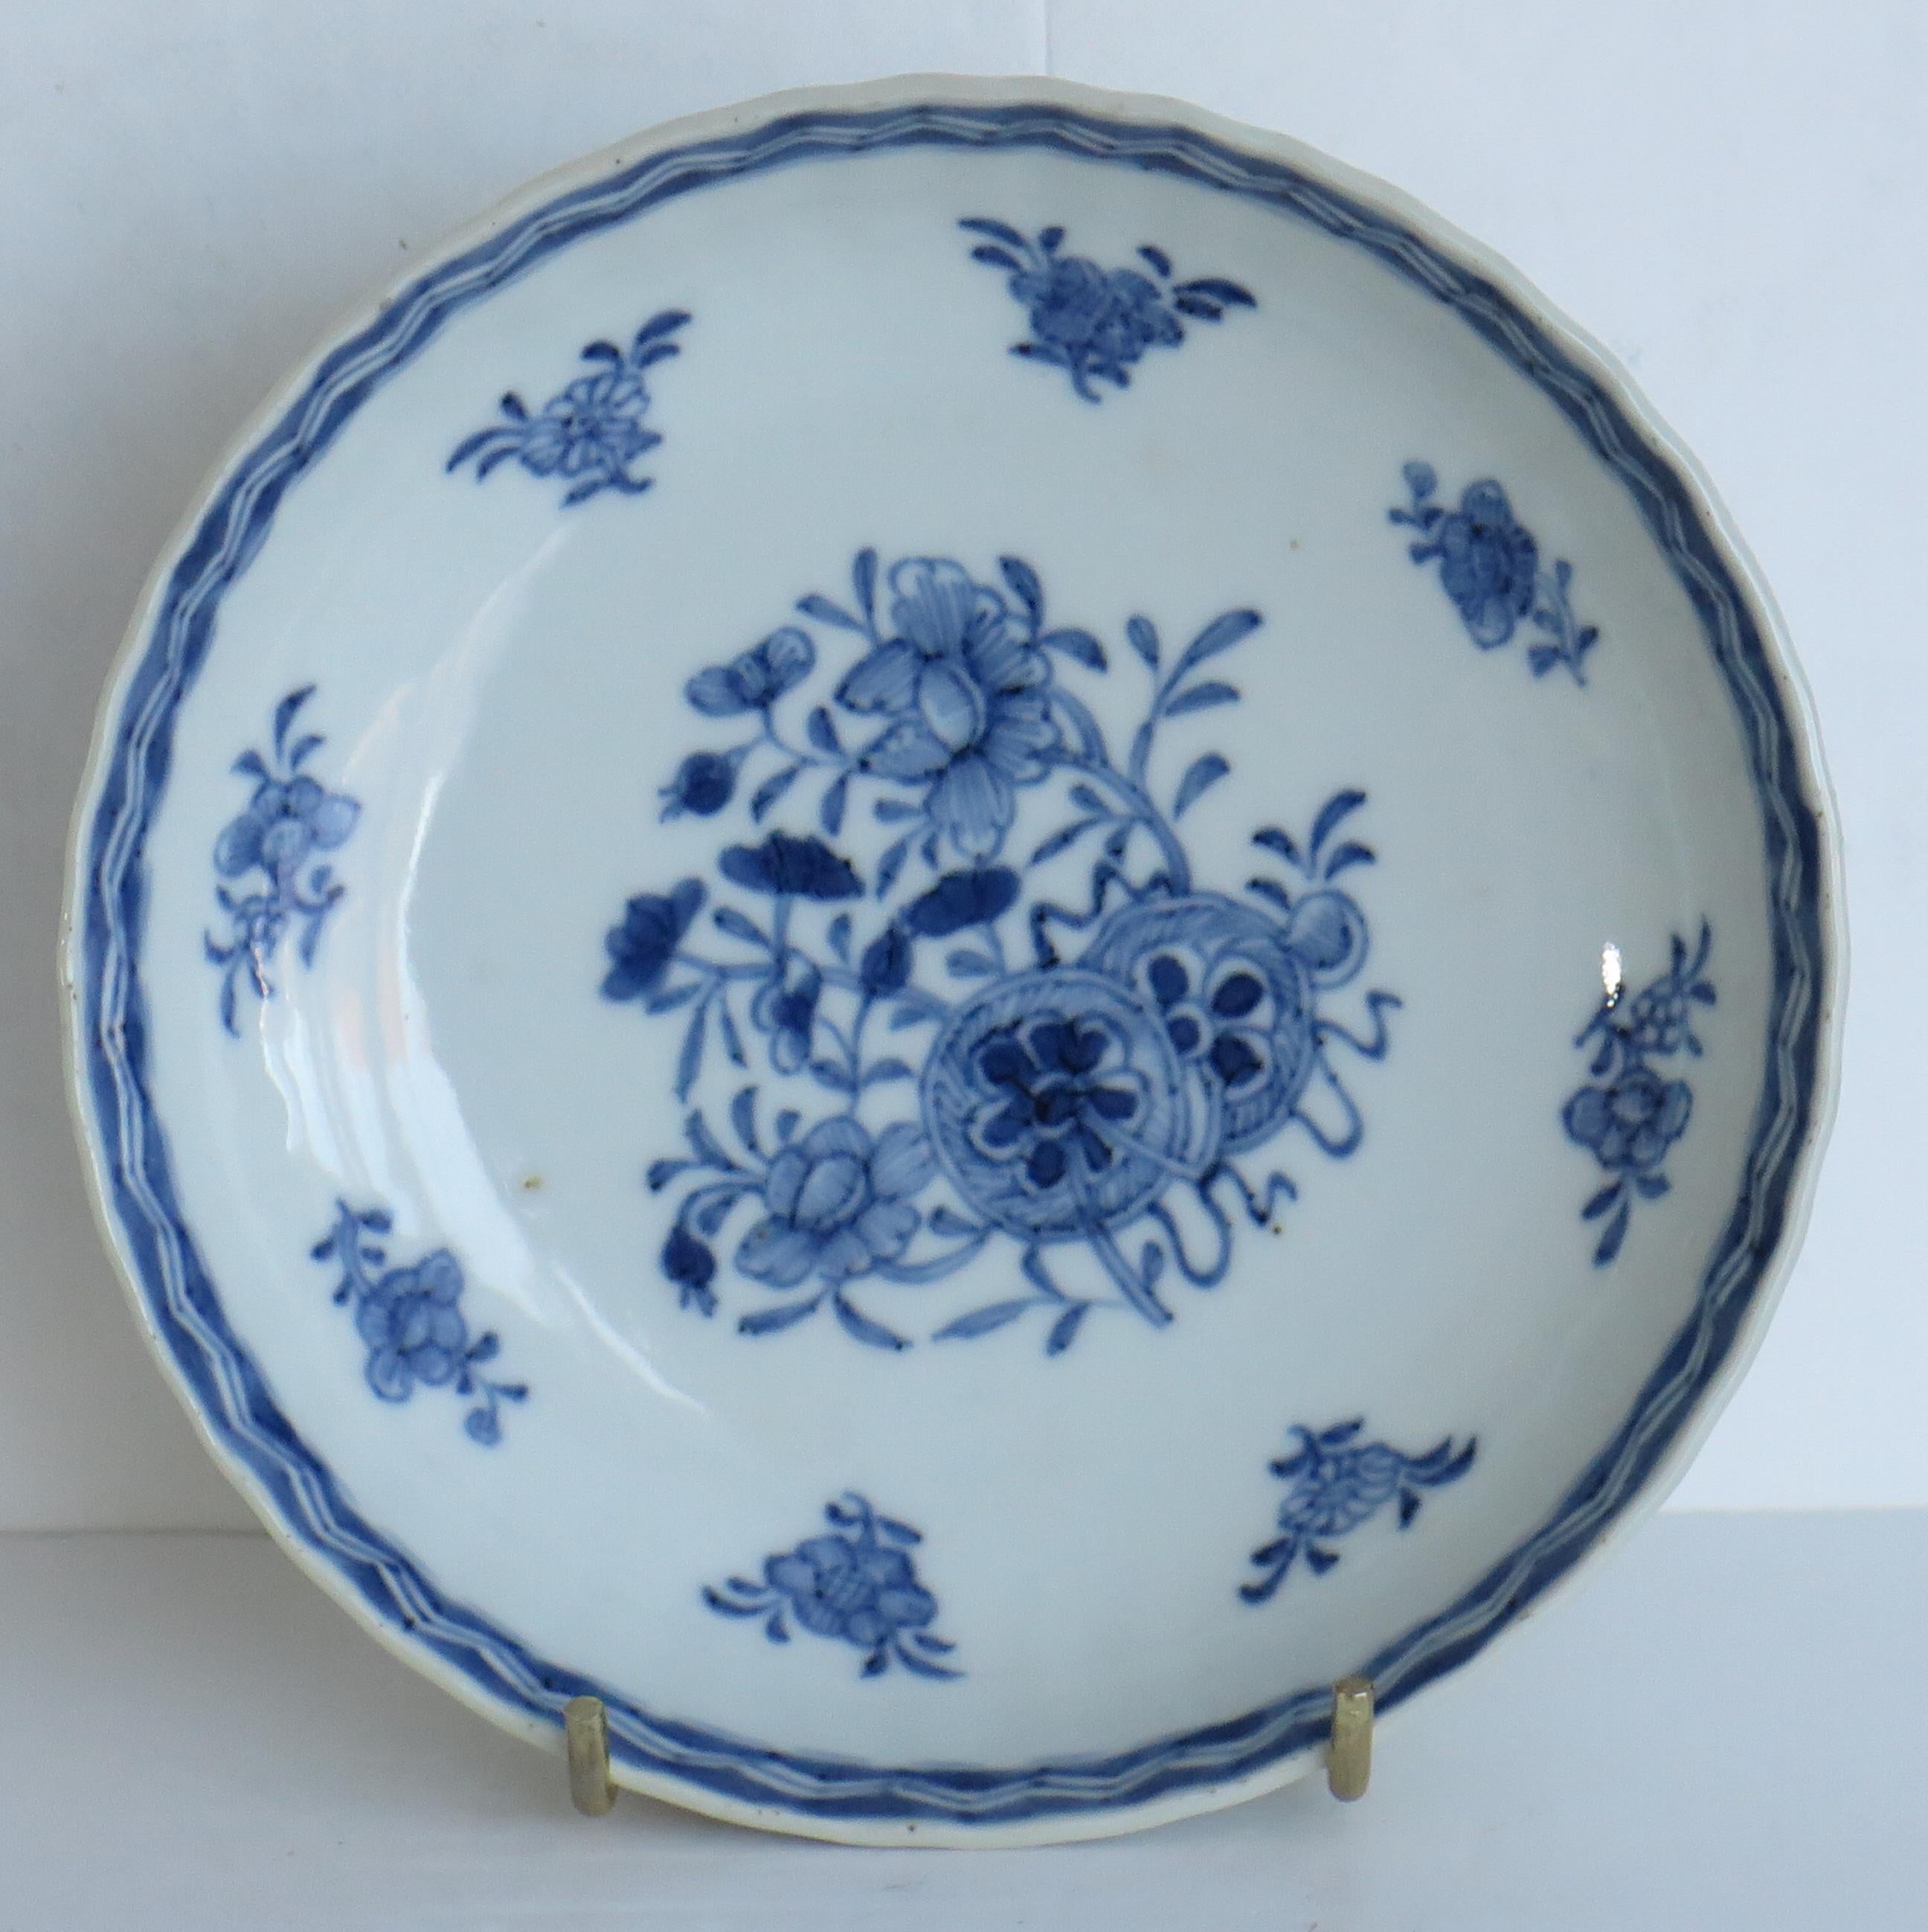 Dies ist eine wunderschön handbemalte chinesische Porzellanschale aus der Mitte des 18. Jahrhunderts, Qing, Qianlong-Periode, um 1750.

Die Schale ist rund, gut getöpfert, mit gerippten Seiten und einer schönen glasigen hellblauen Glasur und einem